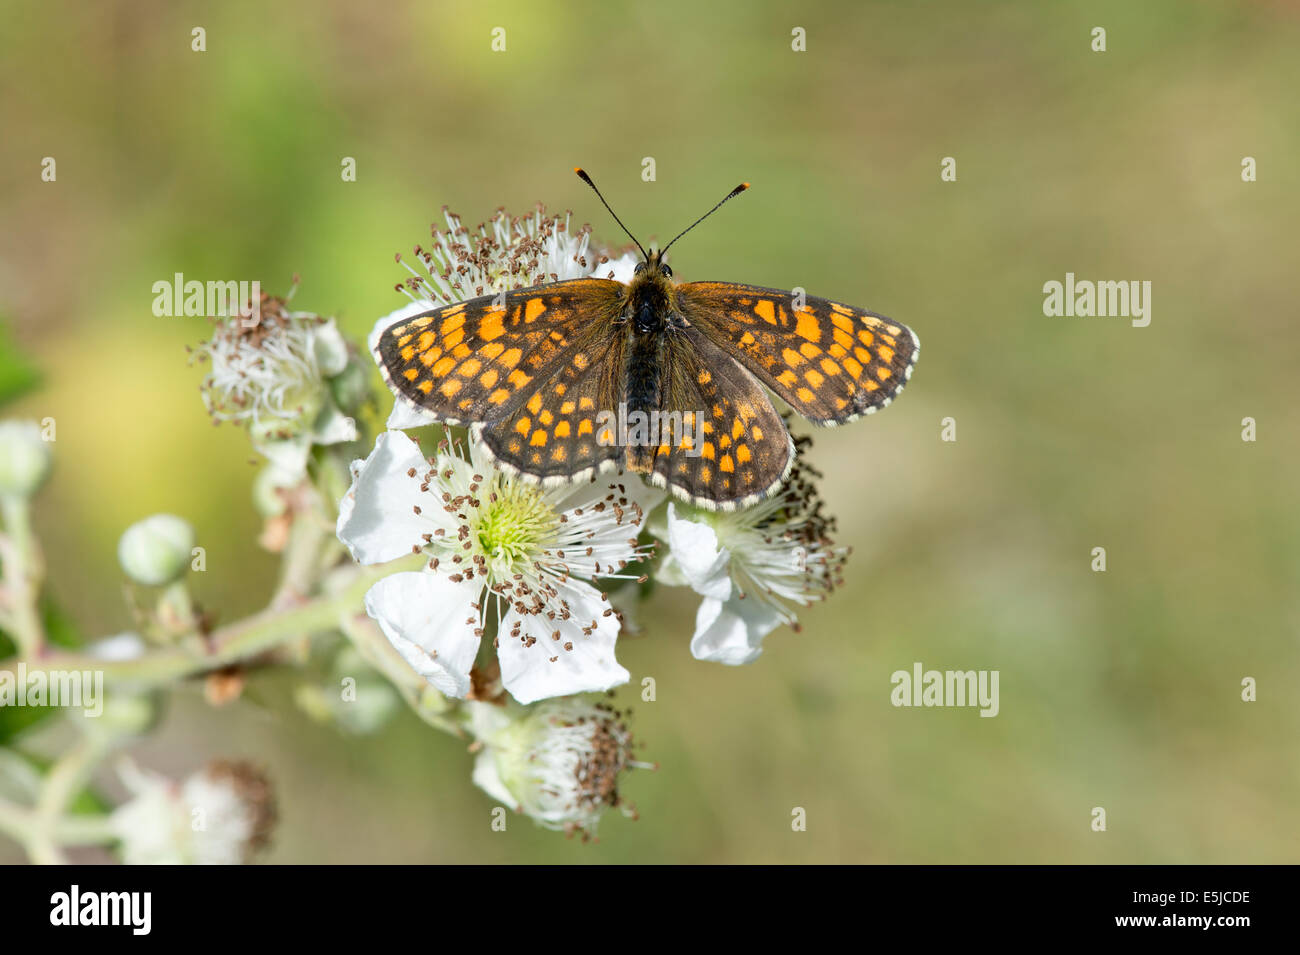 Heath fritillary butterfly (Melitaea athalia), UK Stock Photo